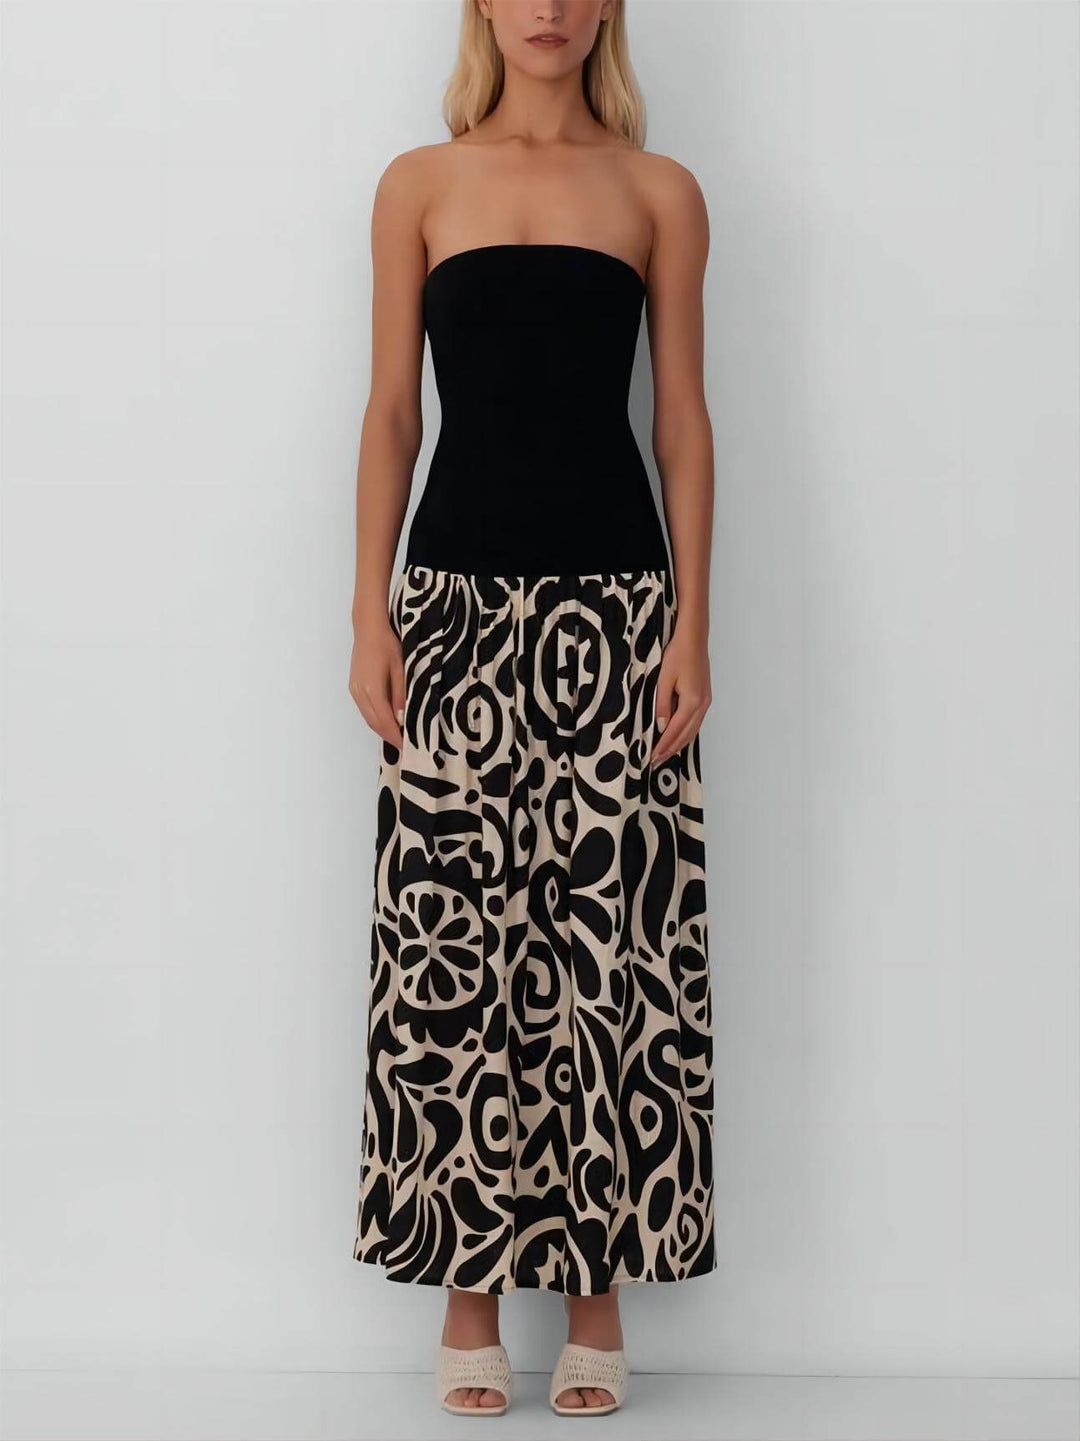 Modna sukienka maxi bez ramiączek w kwiatowy print